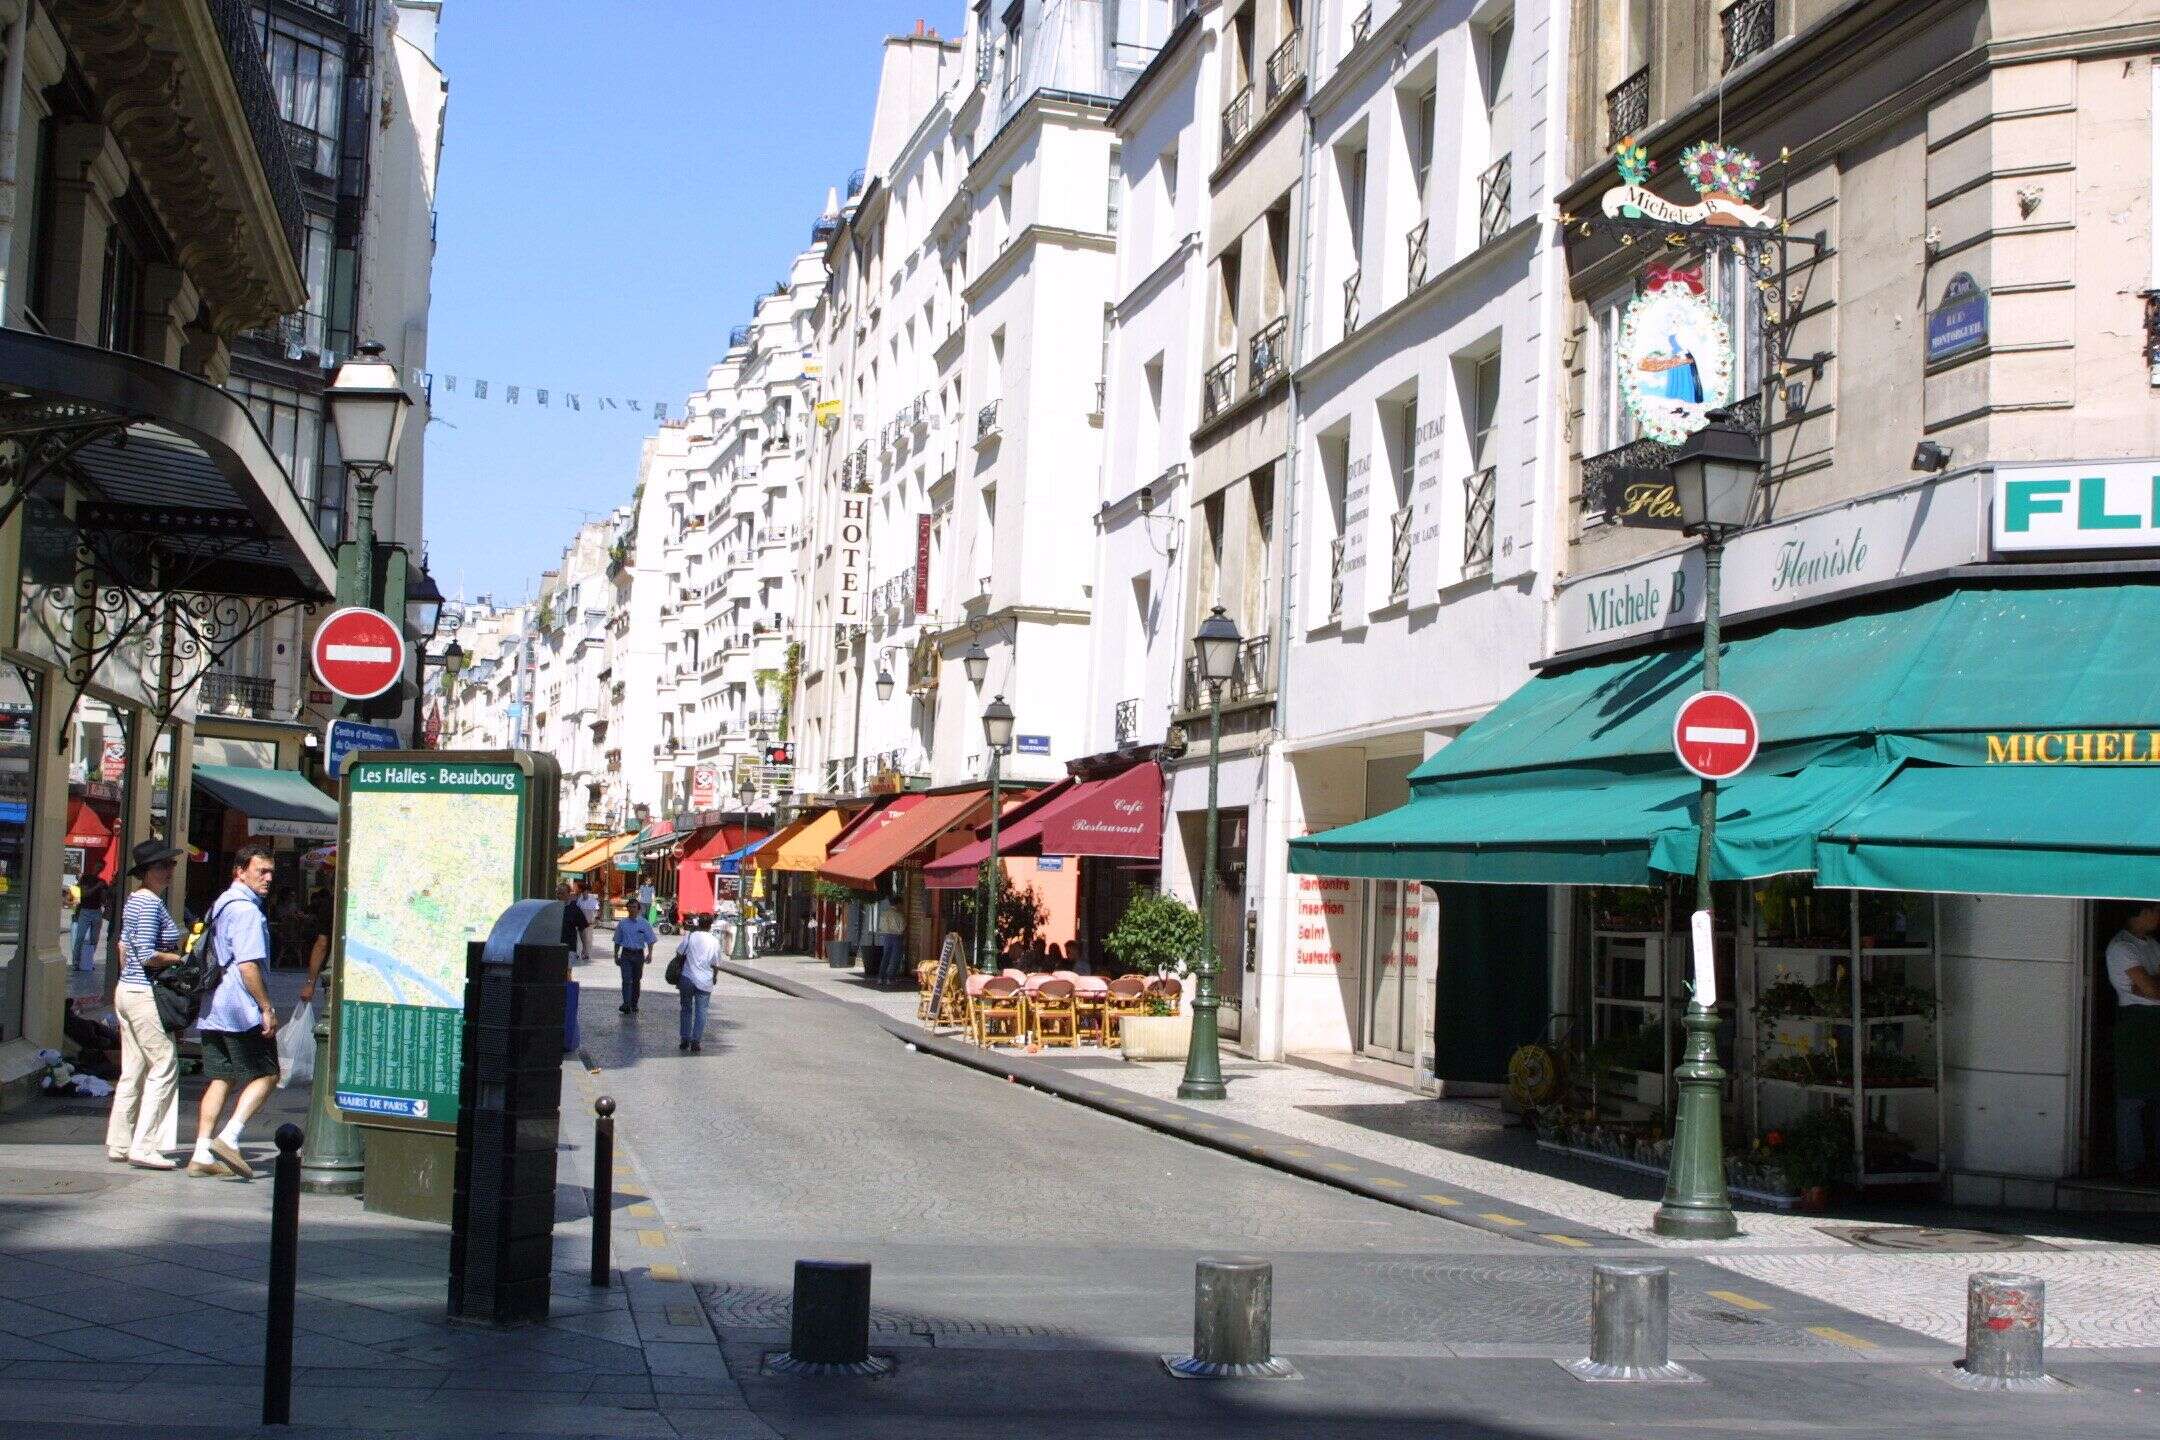 Image d'illustration - Les commerces situés rue Montorgueil à Paris, dans le quartier piétonnier près des Halles.